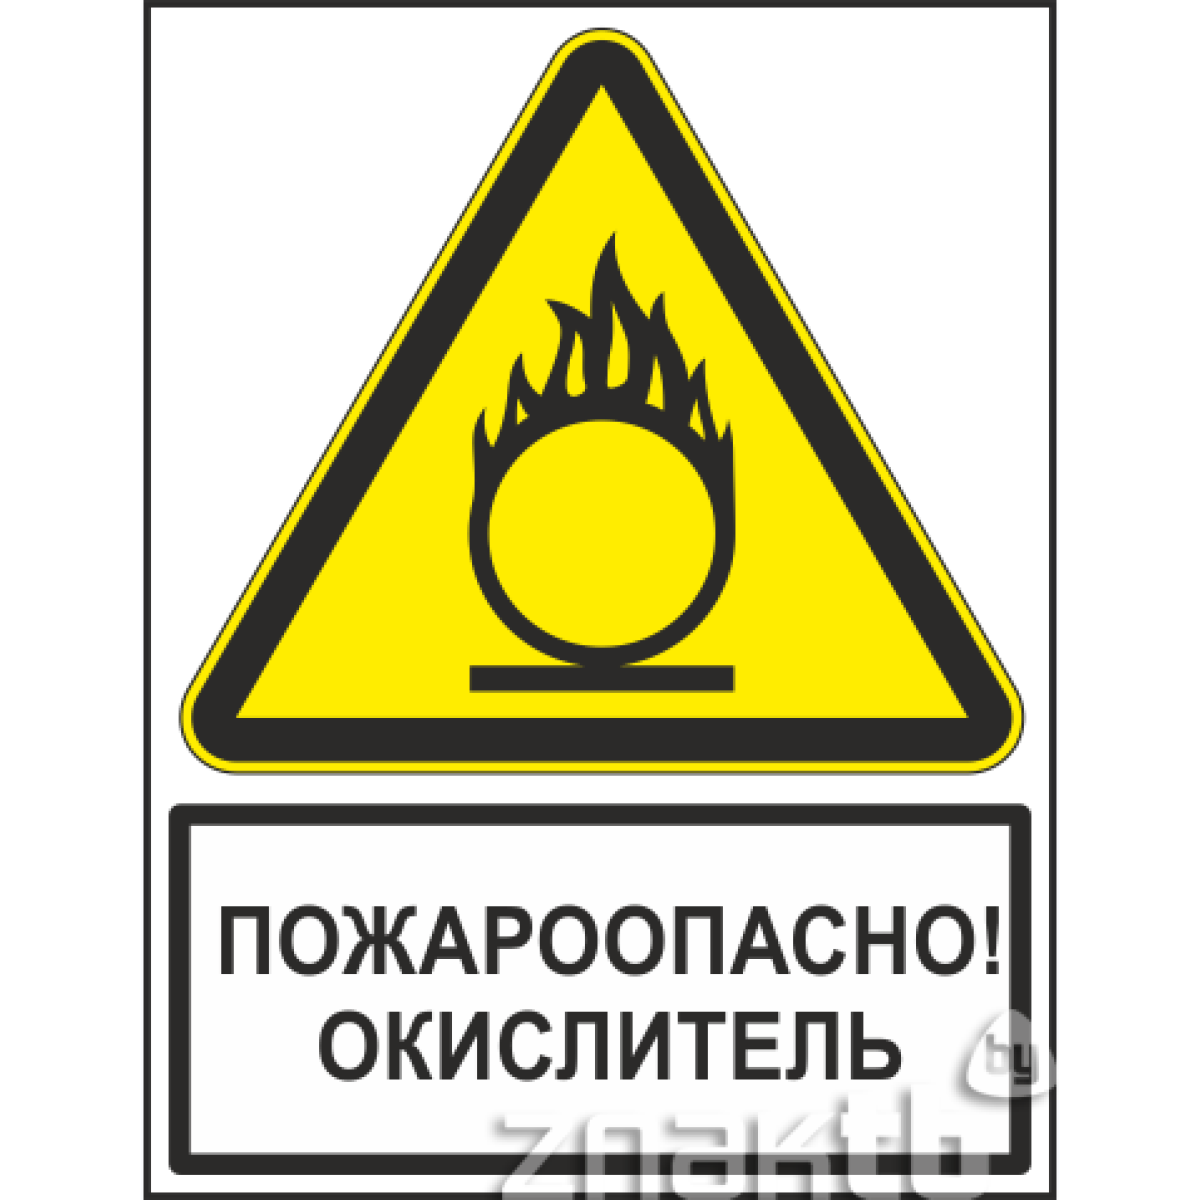 Знак Пожароопасно! Окислитель (с поясняющей надписью)